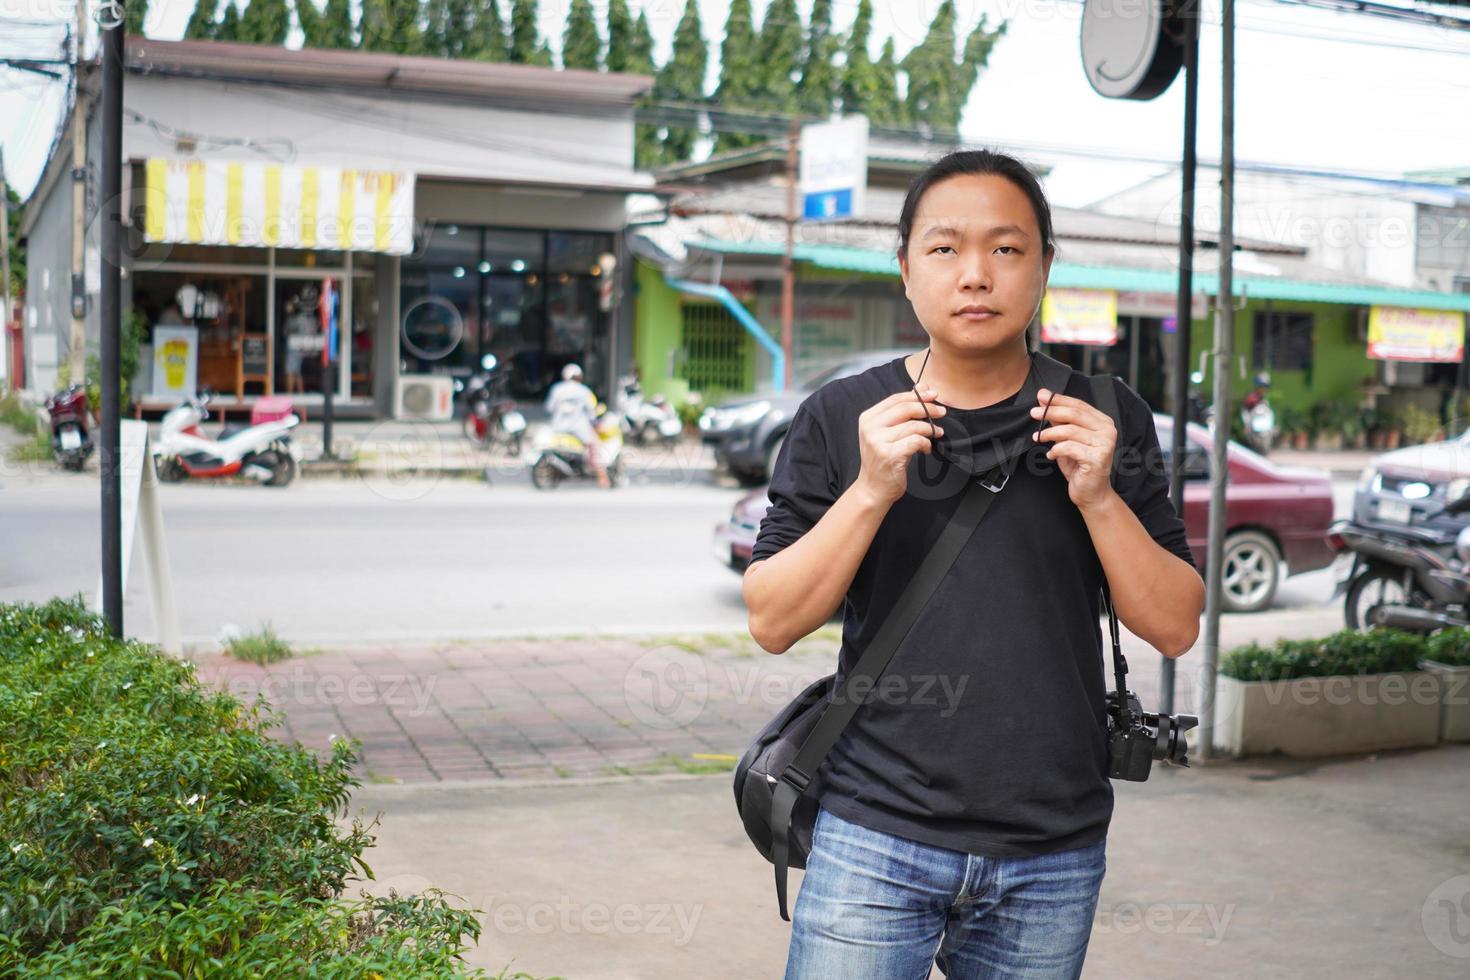 homem asiático de camiseta preta e calça jeans está usando máscara facial preta em frente ao prédio comercial da tailândia e área de estrada rural. foto